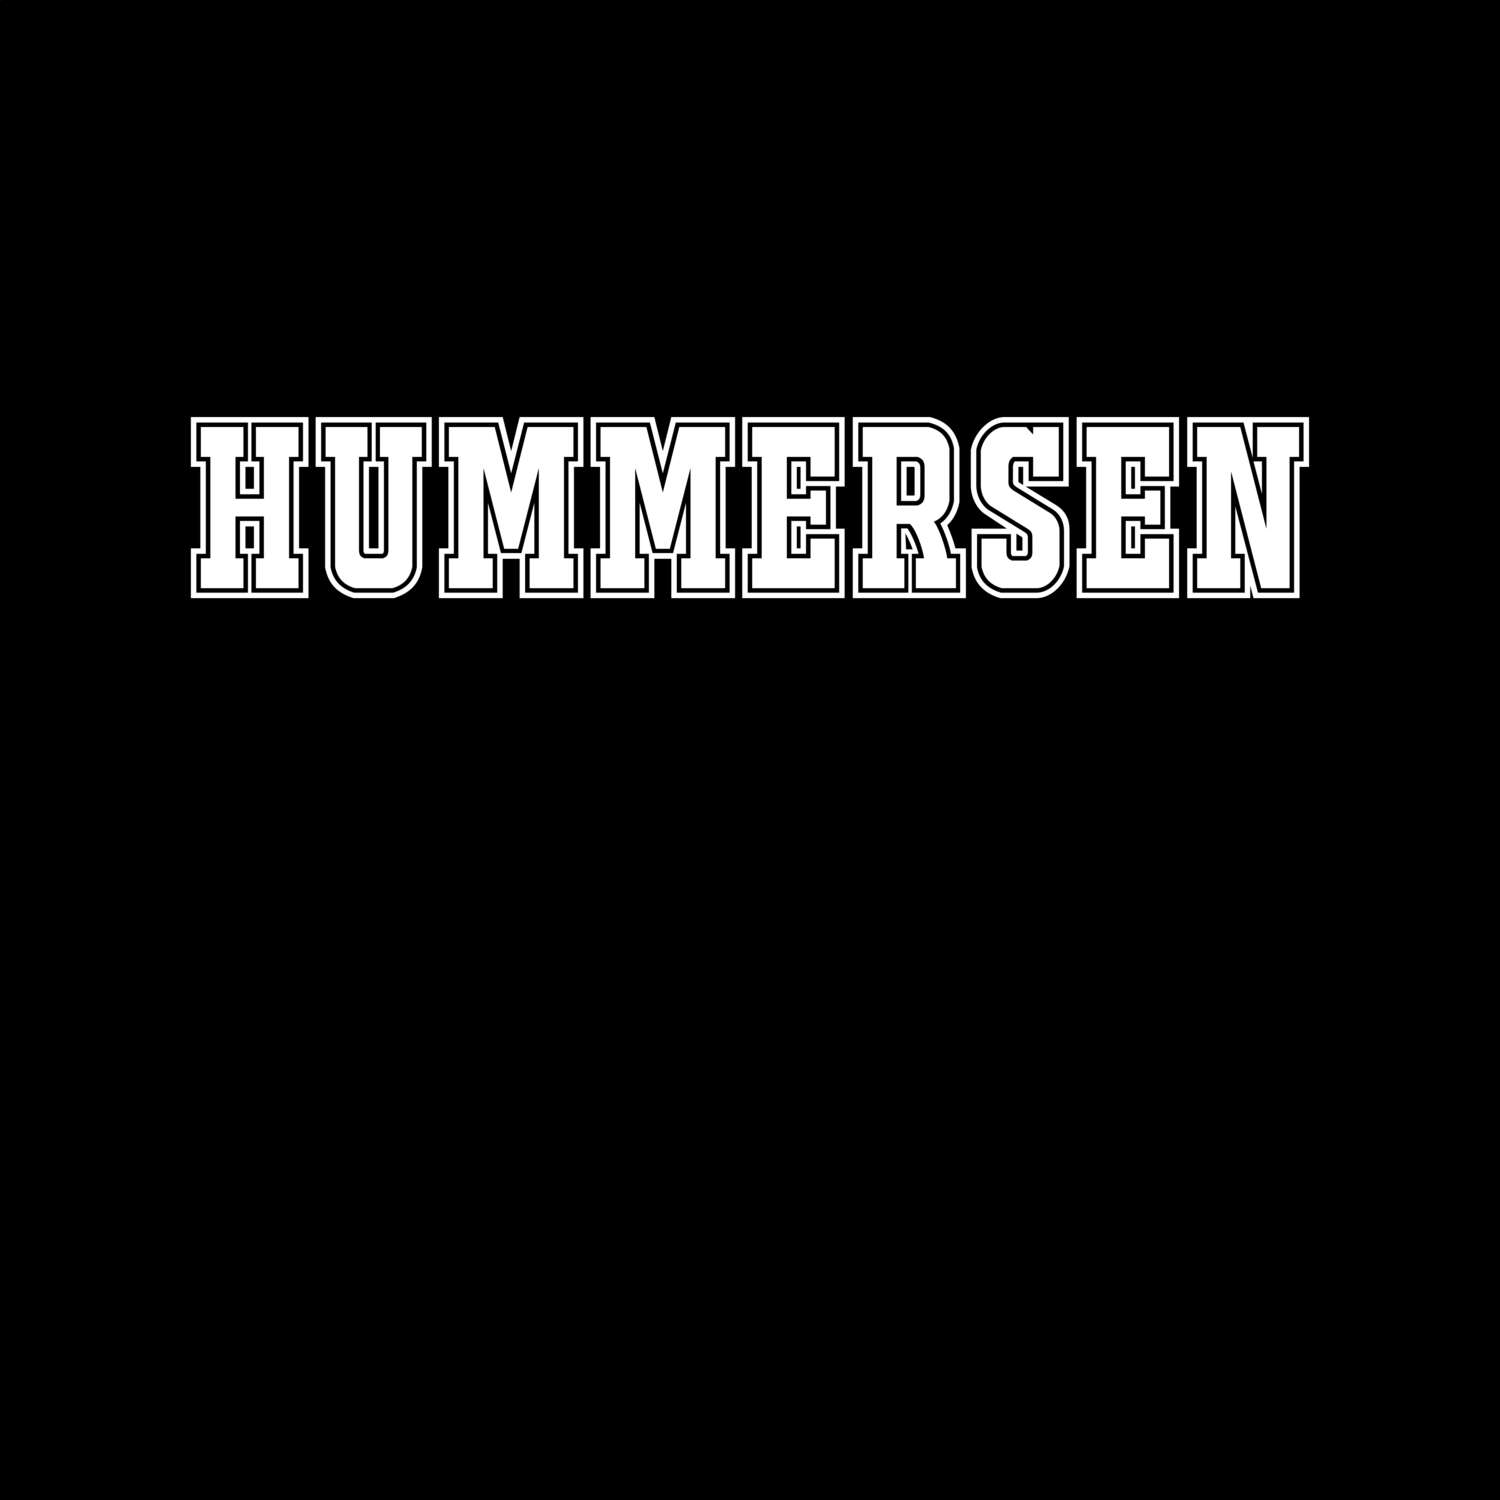 Hummersen T-Shirt »Classic«